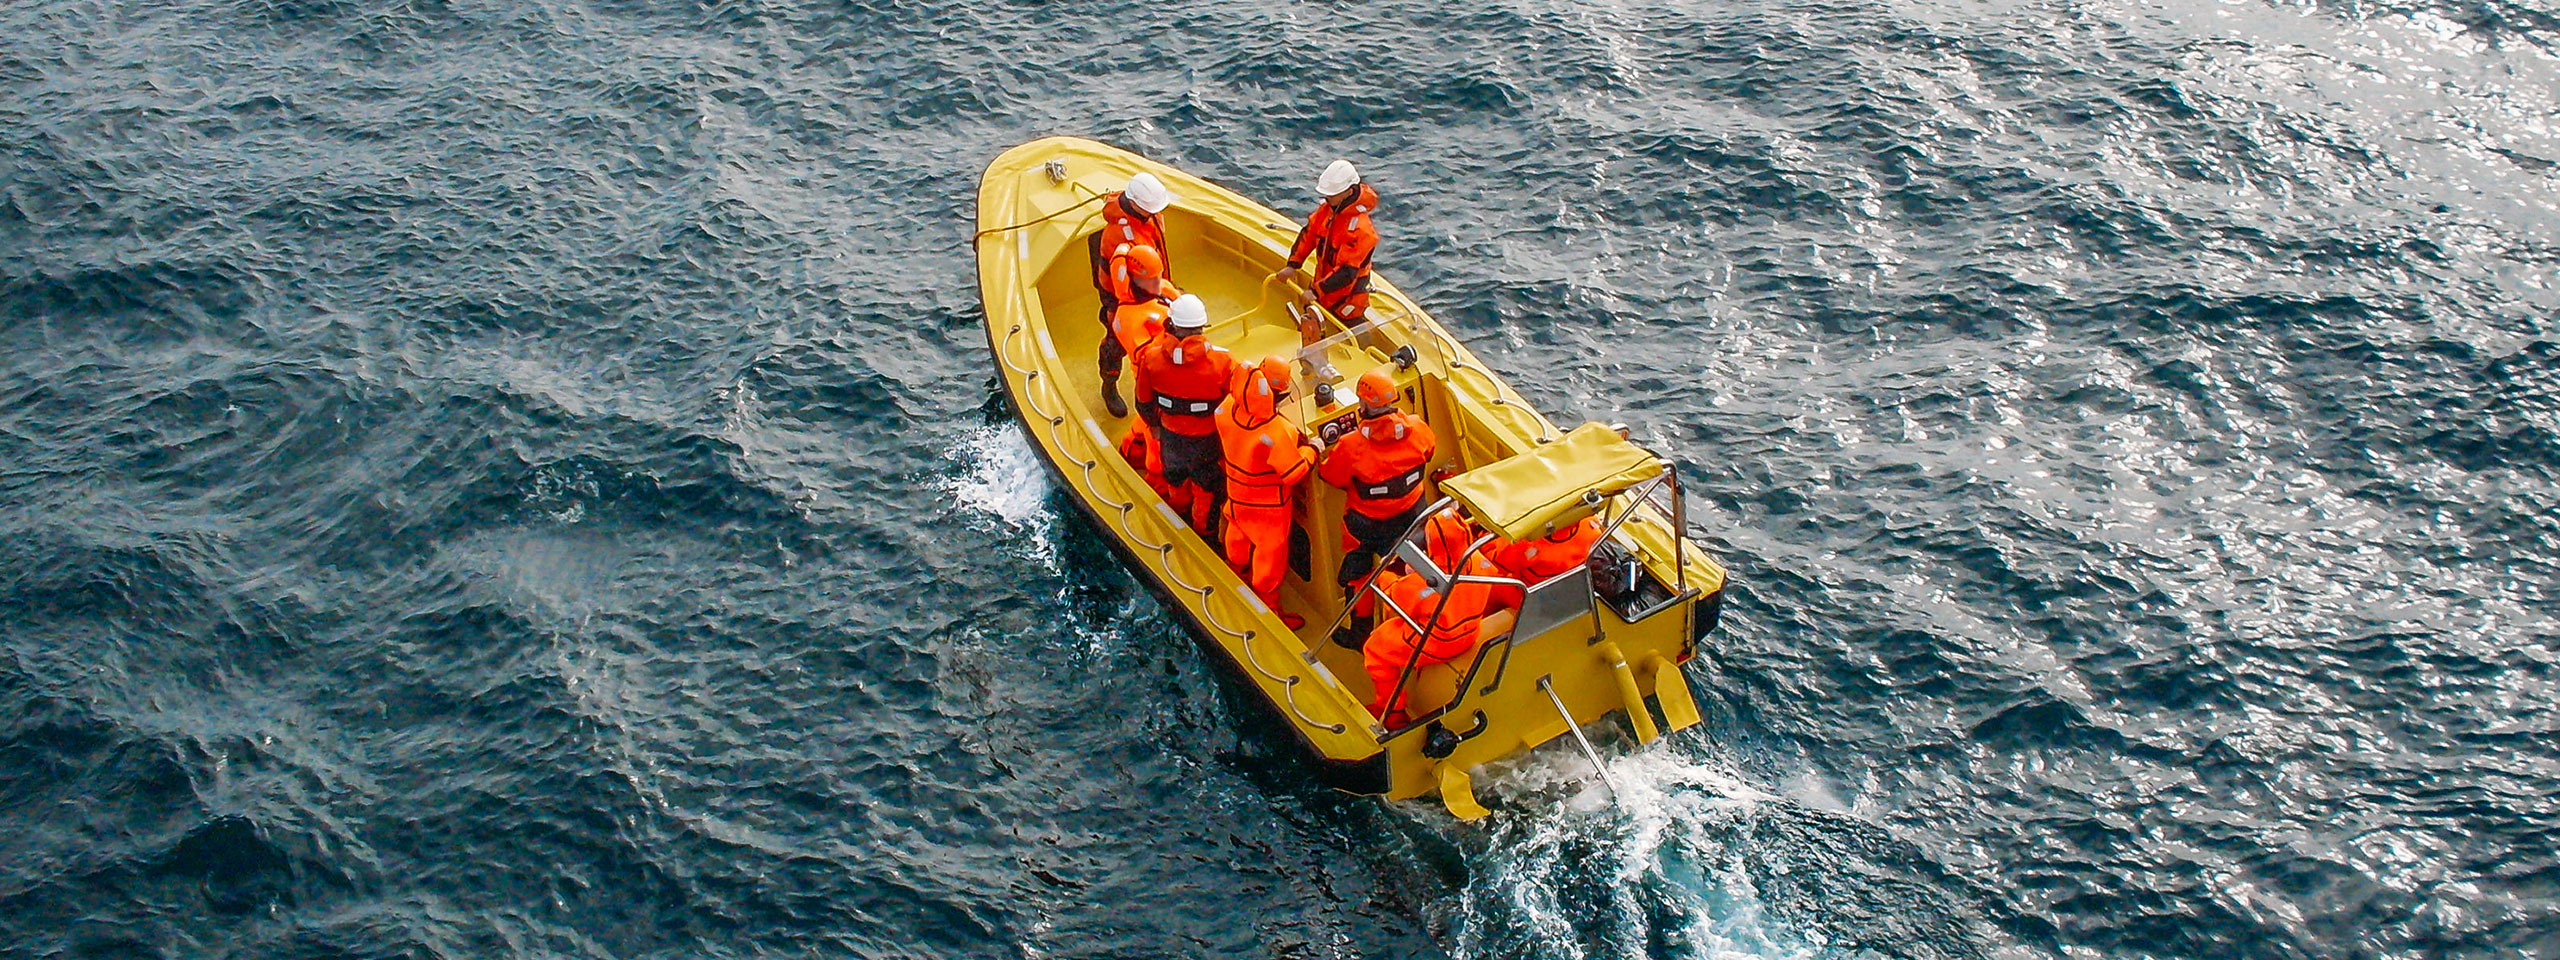 Workboat jaune